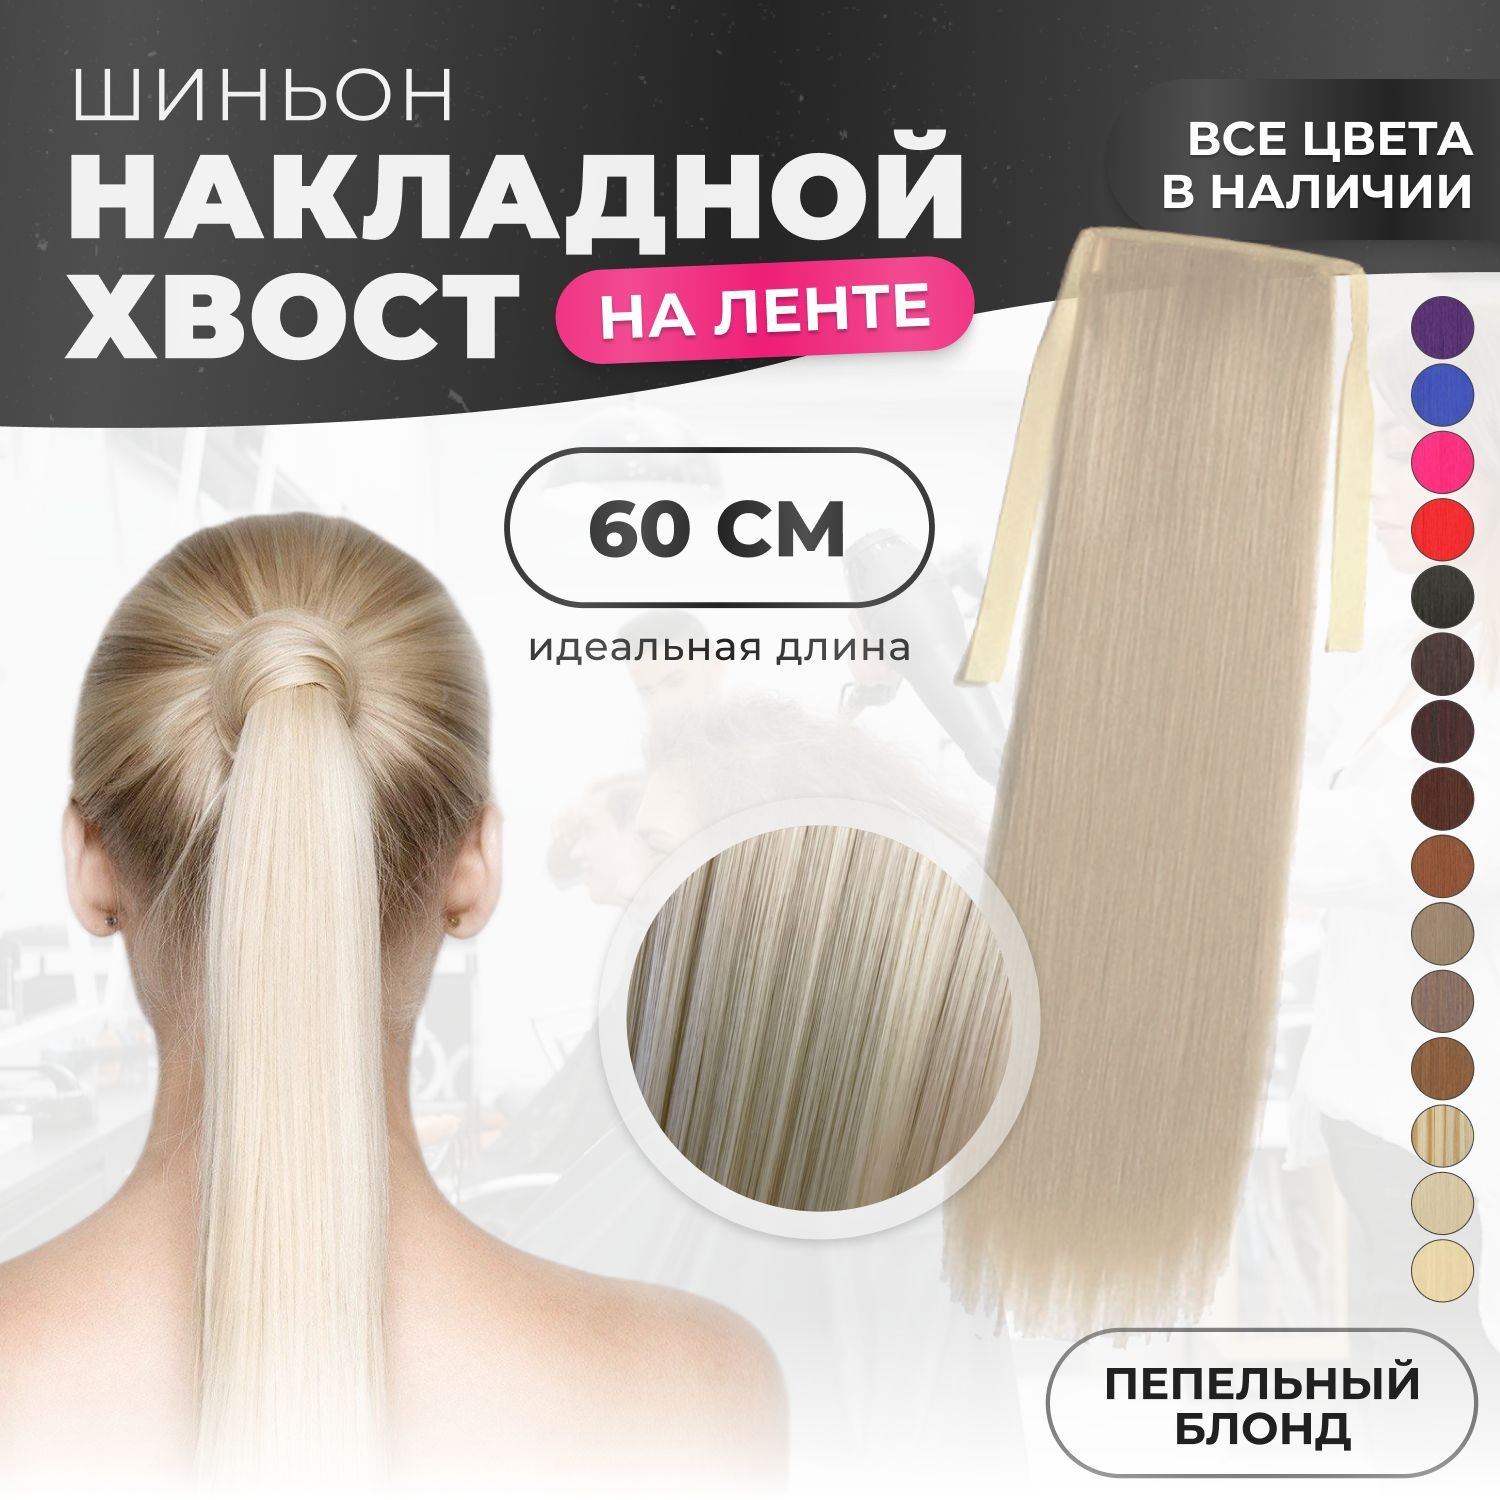 Разработка и практическое выполнение коллекции причесок из длинных волос